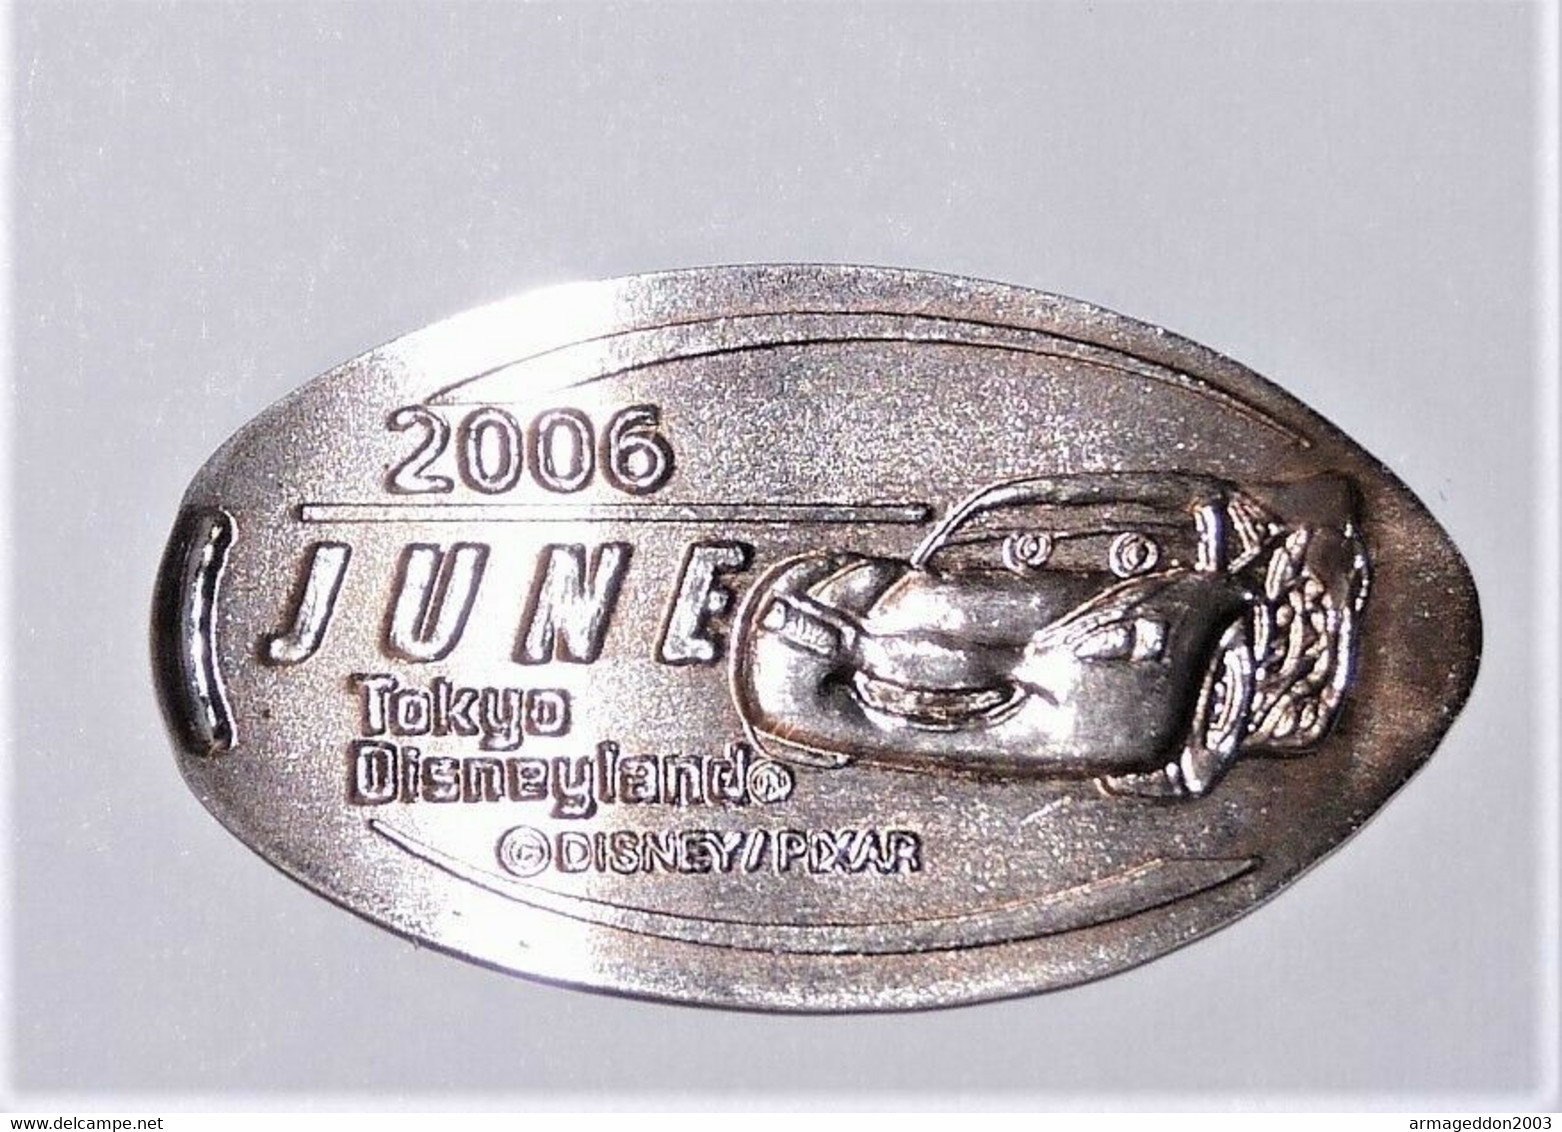 Pressed Coins Souvenir Medallion Médaillon Medaille Cars 2006 Pixar Disney - Pièces écrasées (Elongated Coins)